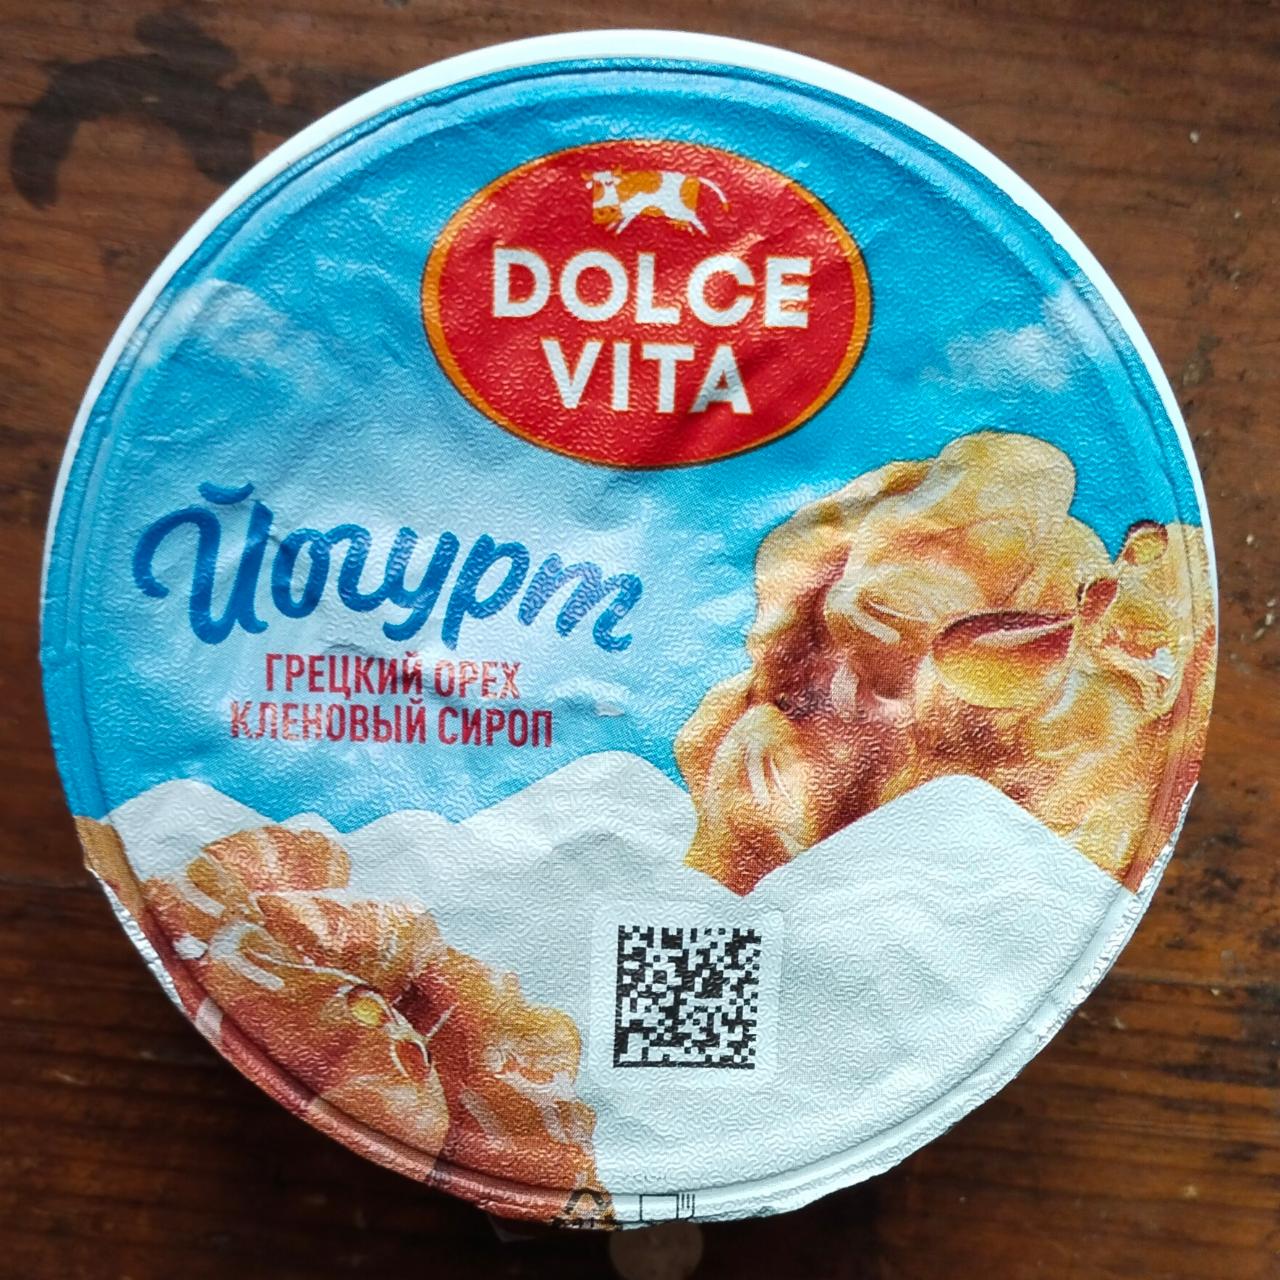 Фото - Дольче Вита йогурт грецкий орех кленовый сироп Dolce Vita